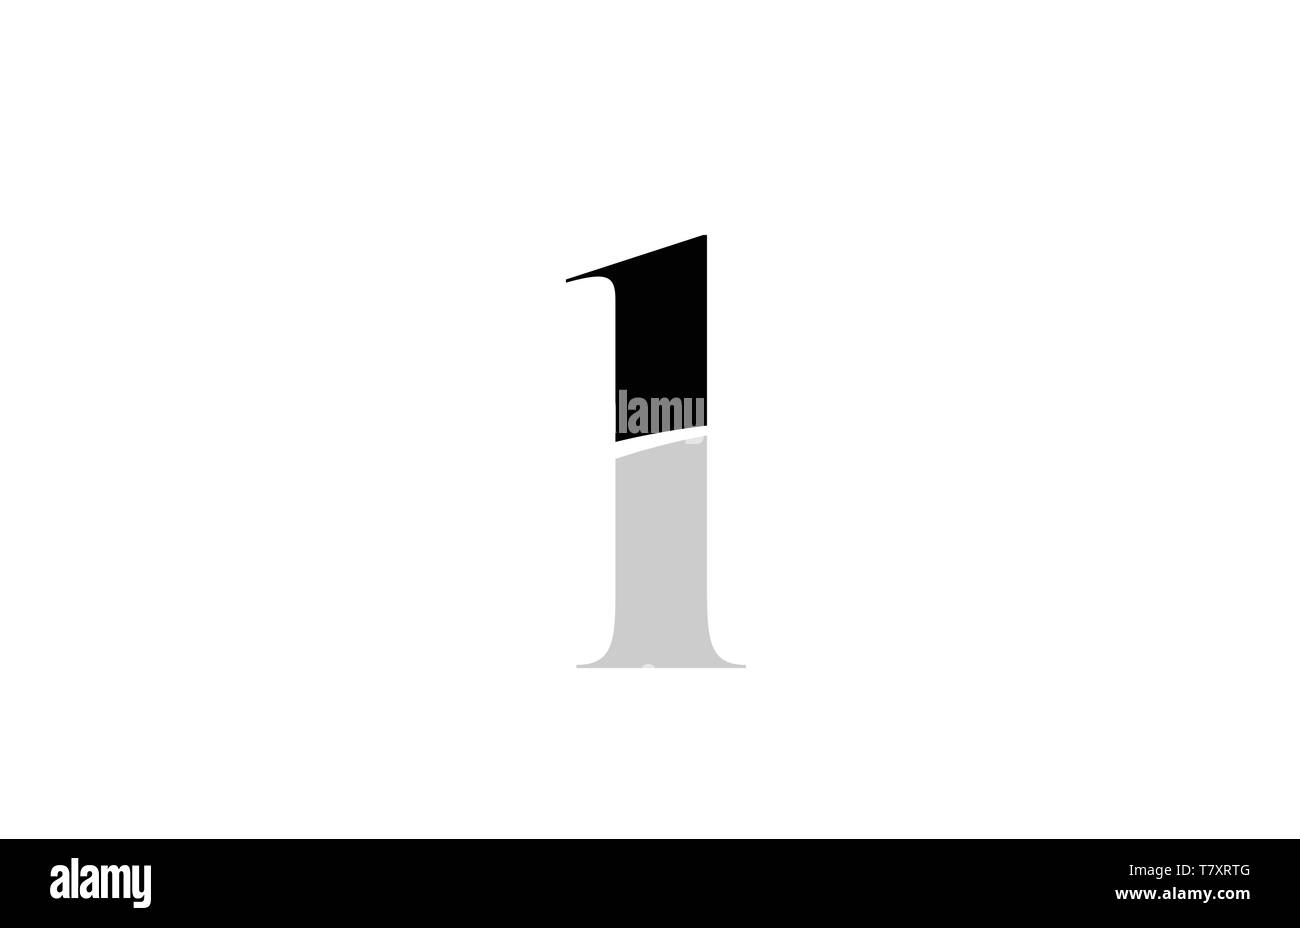 Onr letter logo design on black background Vector Image